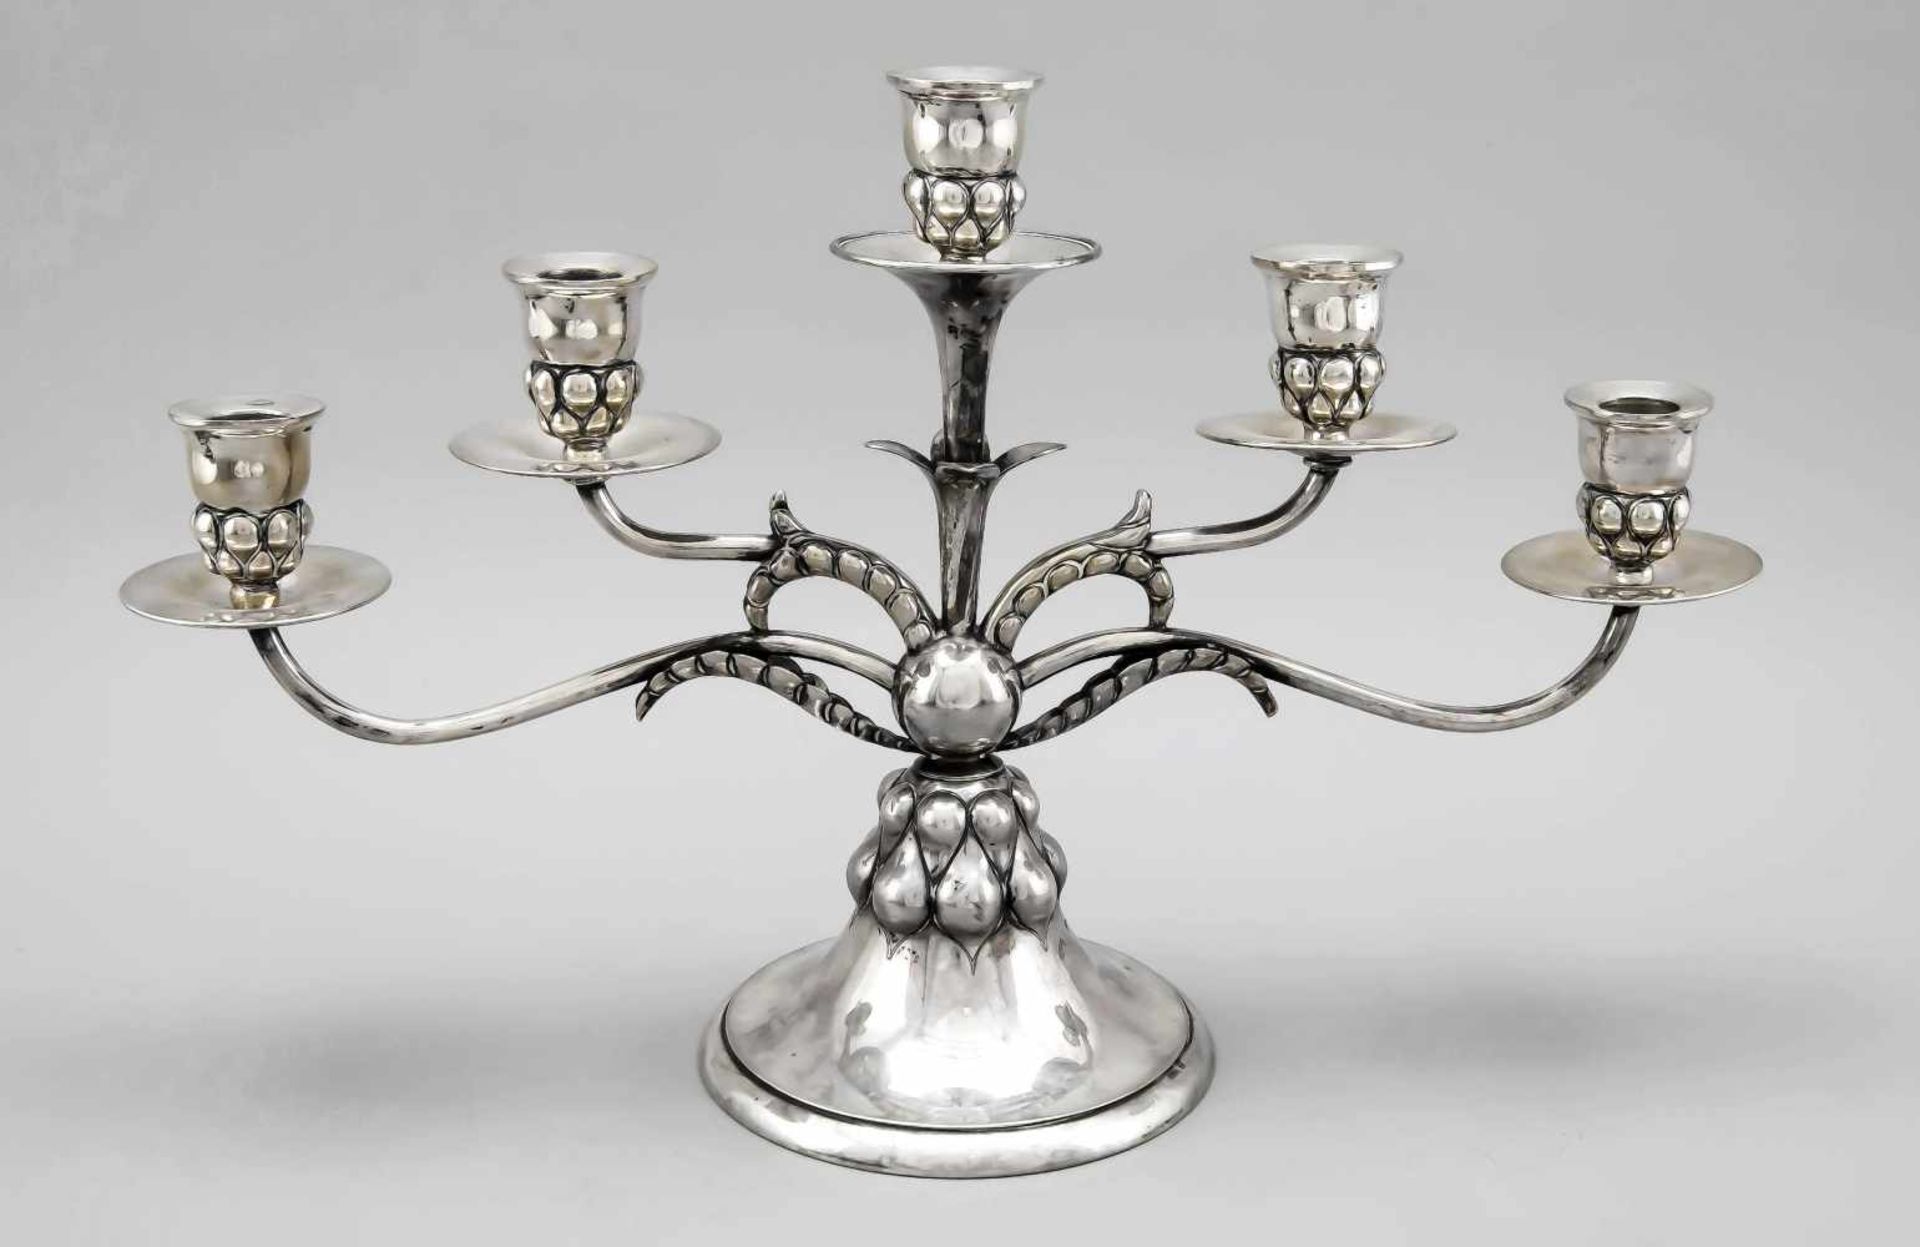 Large candlestick, German, around 1900, hallmarked Weinranck & Schmidt, Hanau, silver800/000,